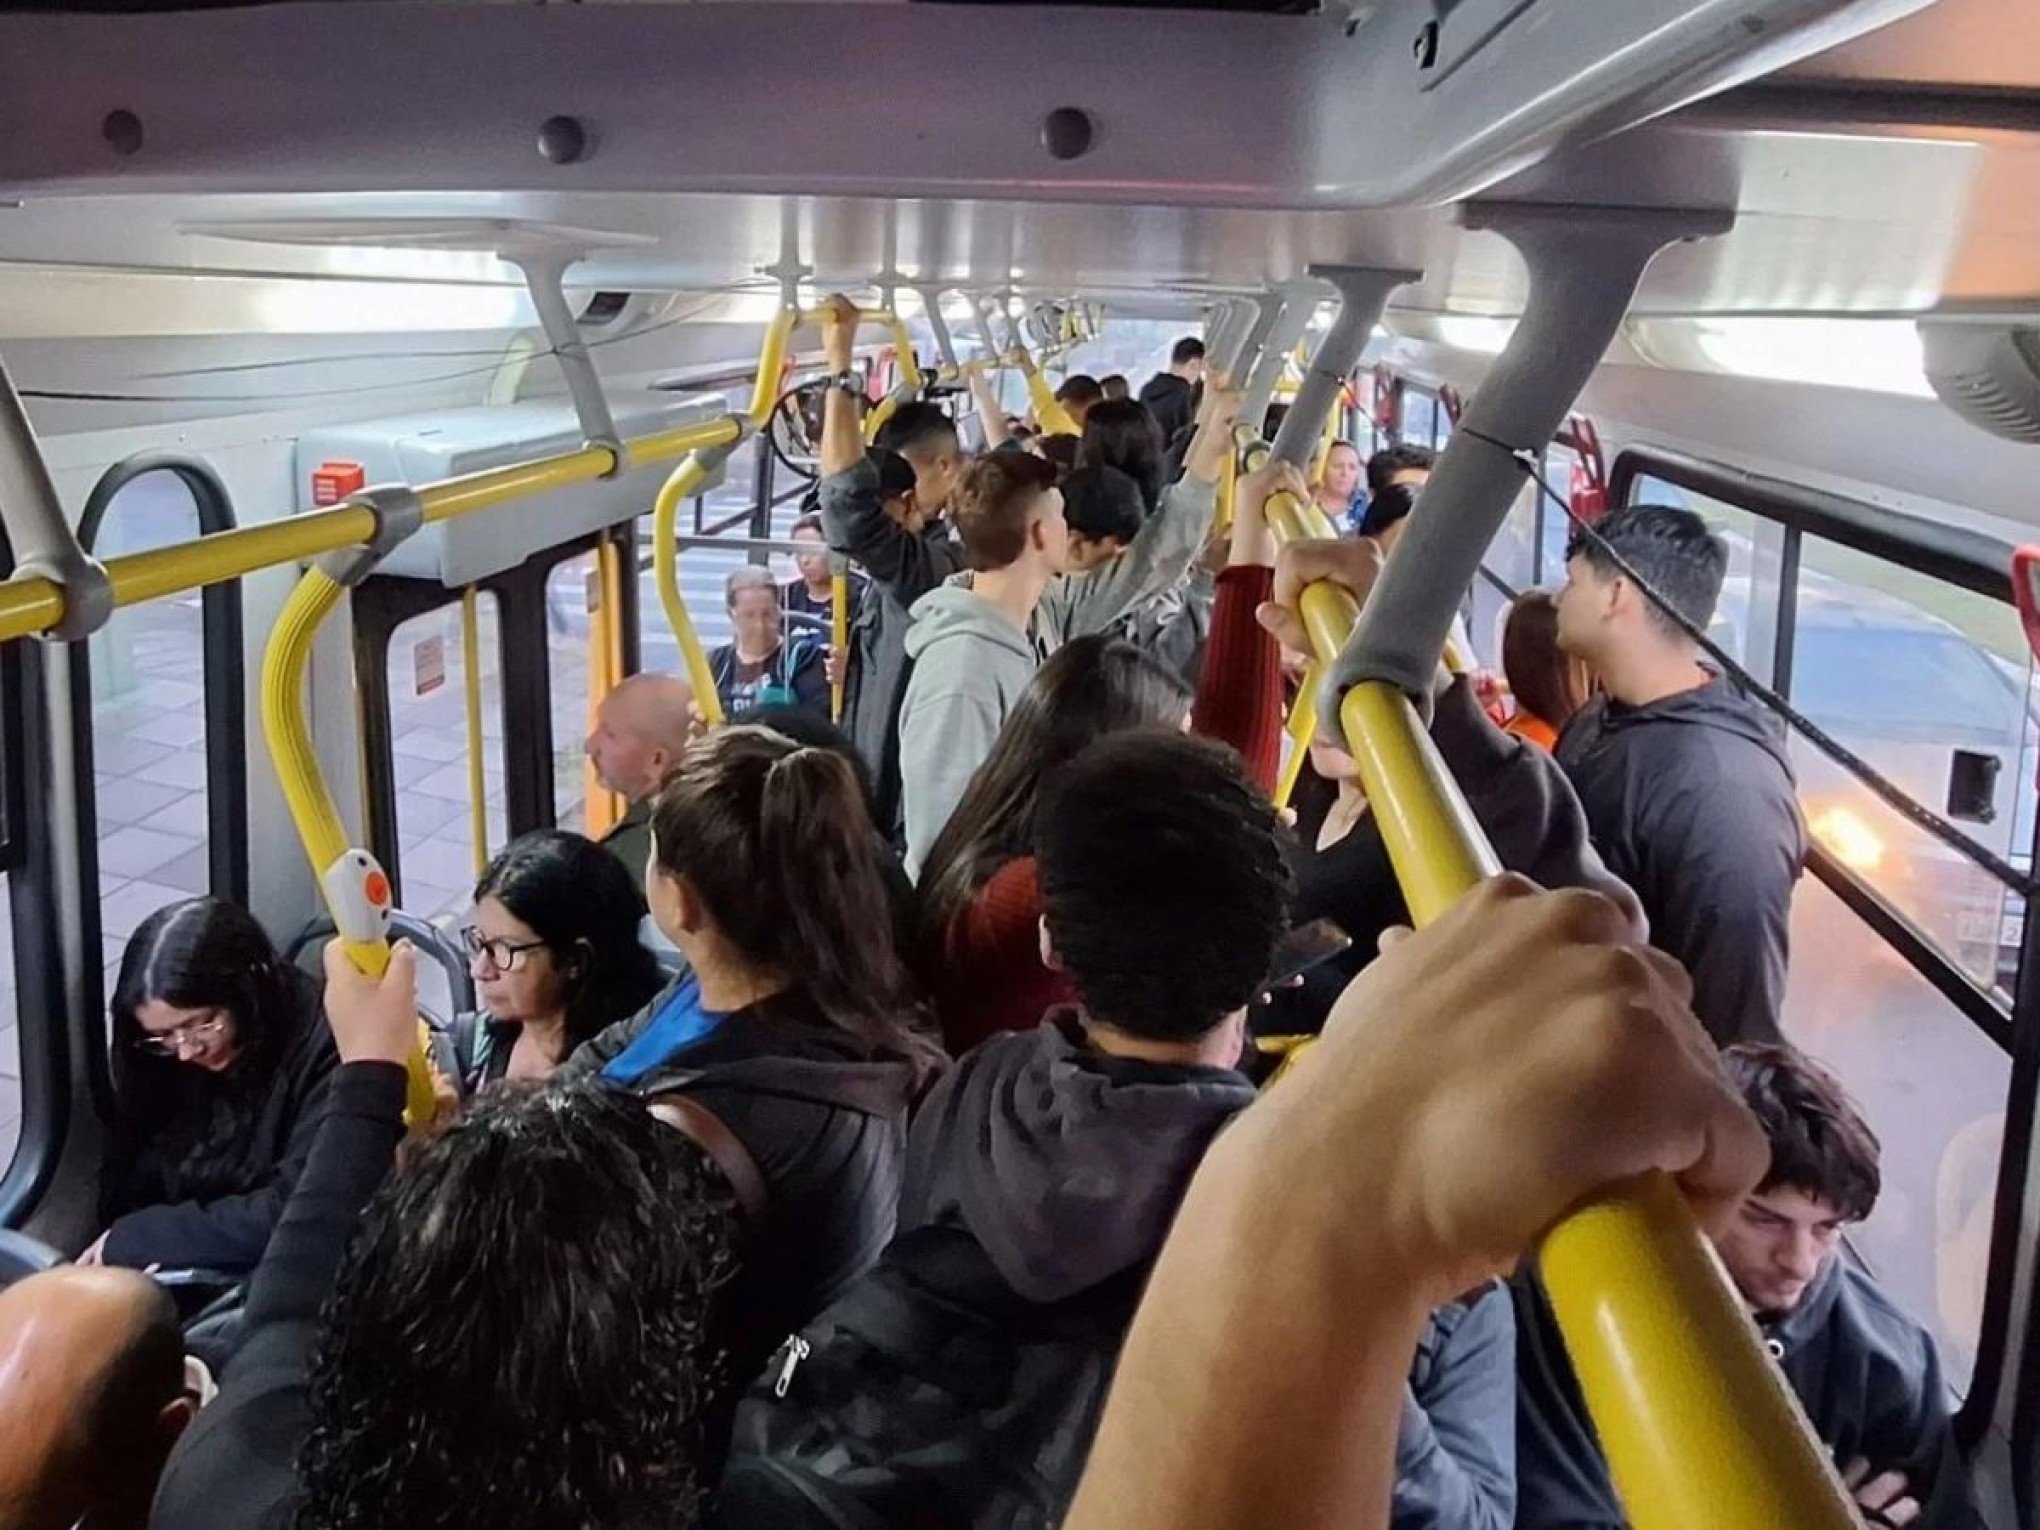 "Parece uma lata de sardinha": Quase 100 passageiros em um único ônibus revelam as consequências dos atrasos